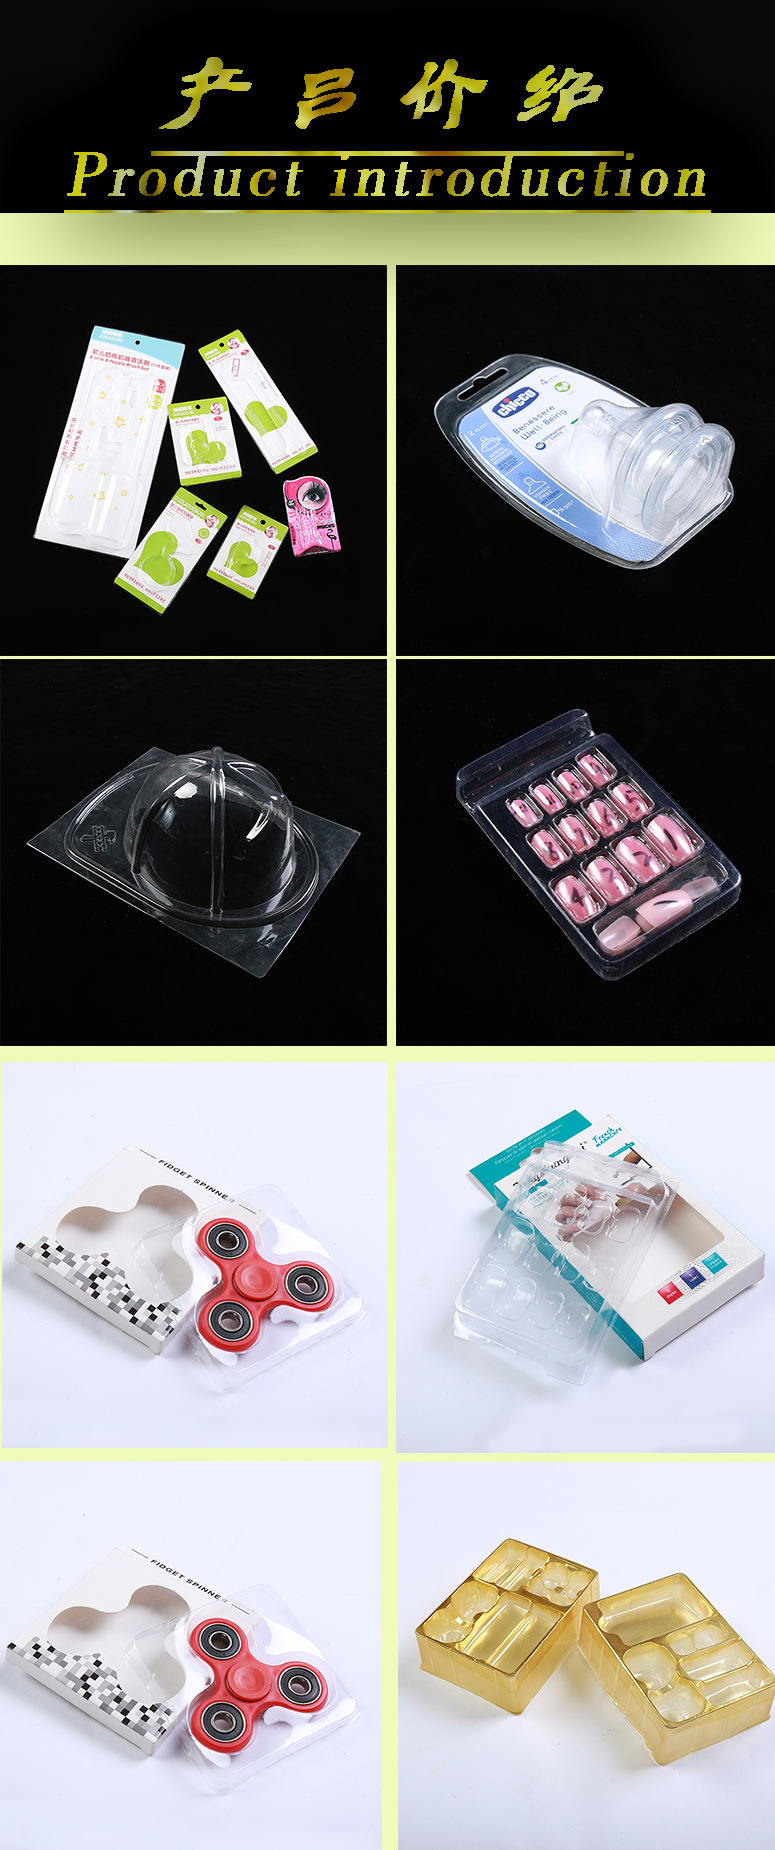 厂家直销PVCPETPP环保五金文玩餐具化妆饰日用食药品吸塑料包装盒示例图5